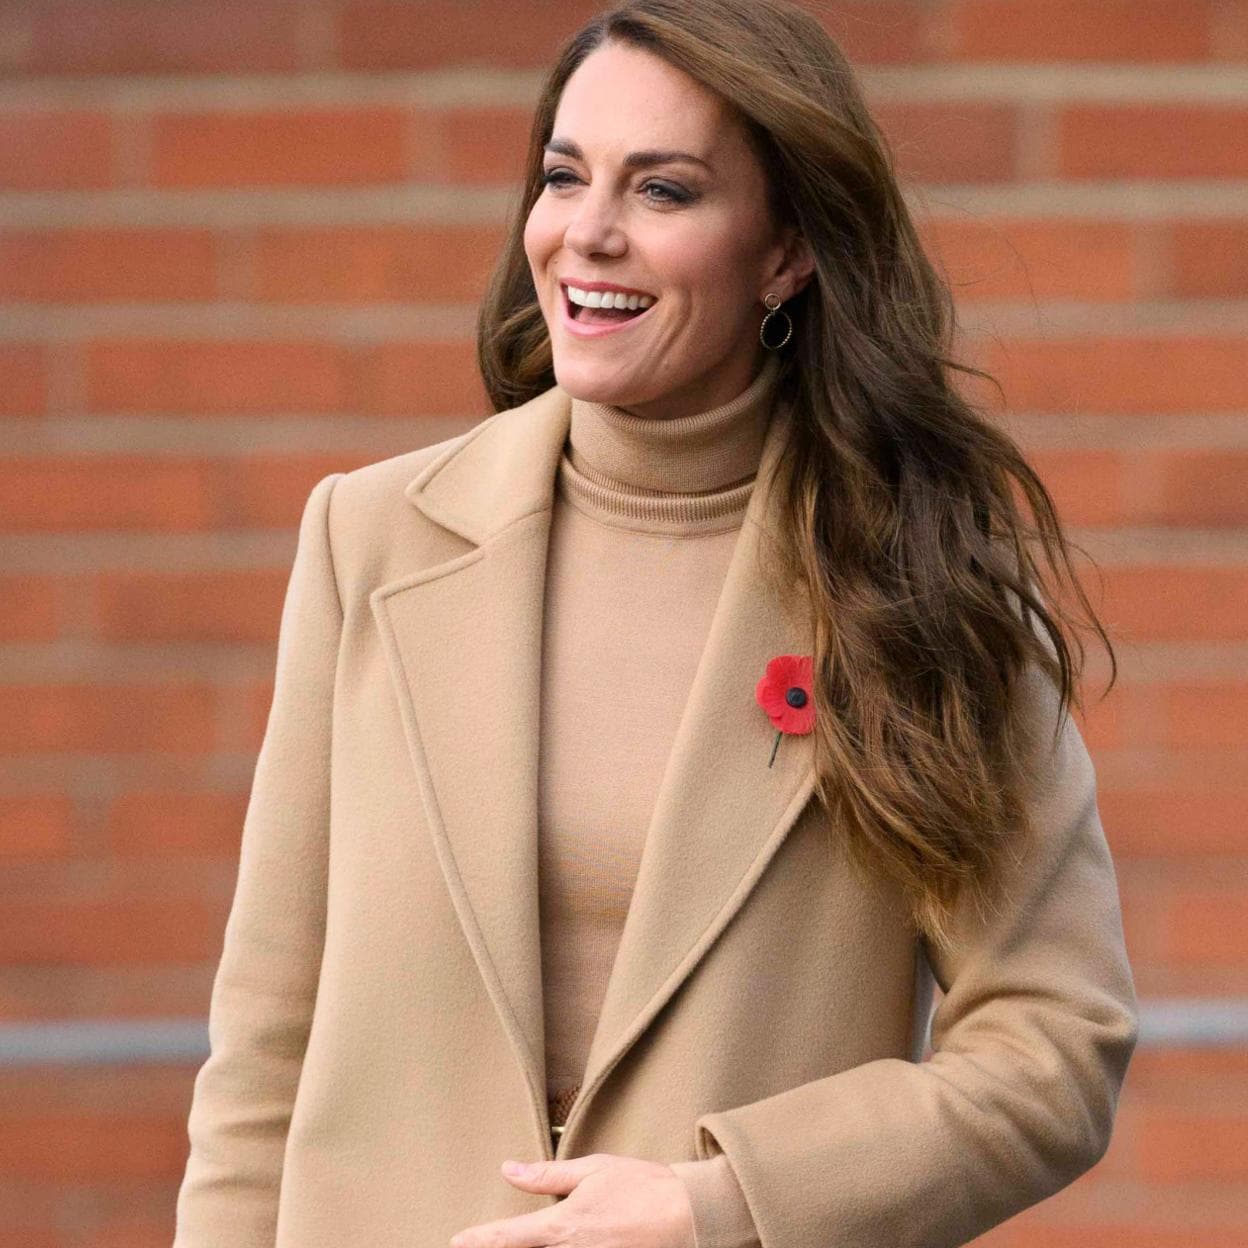 Guión donde quiera líquido Zara tiene la copia low cost del abrigo elegantísimo de Kate Middleton |  Mujer Hoy